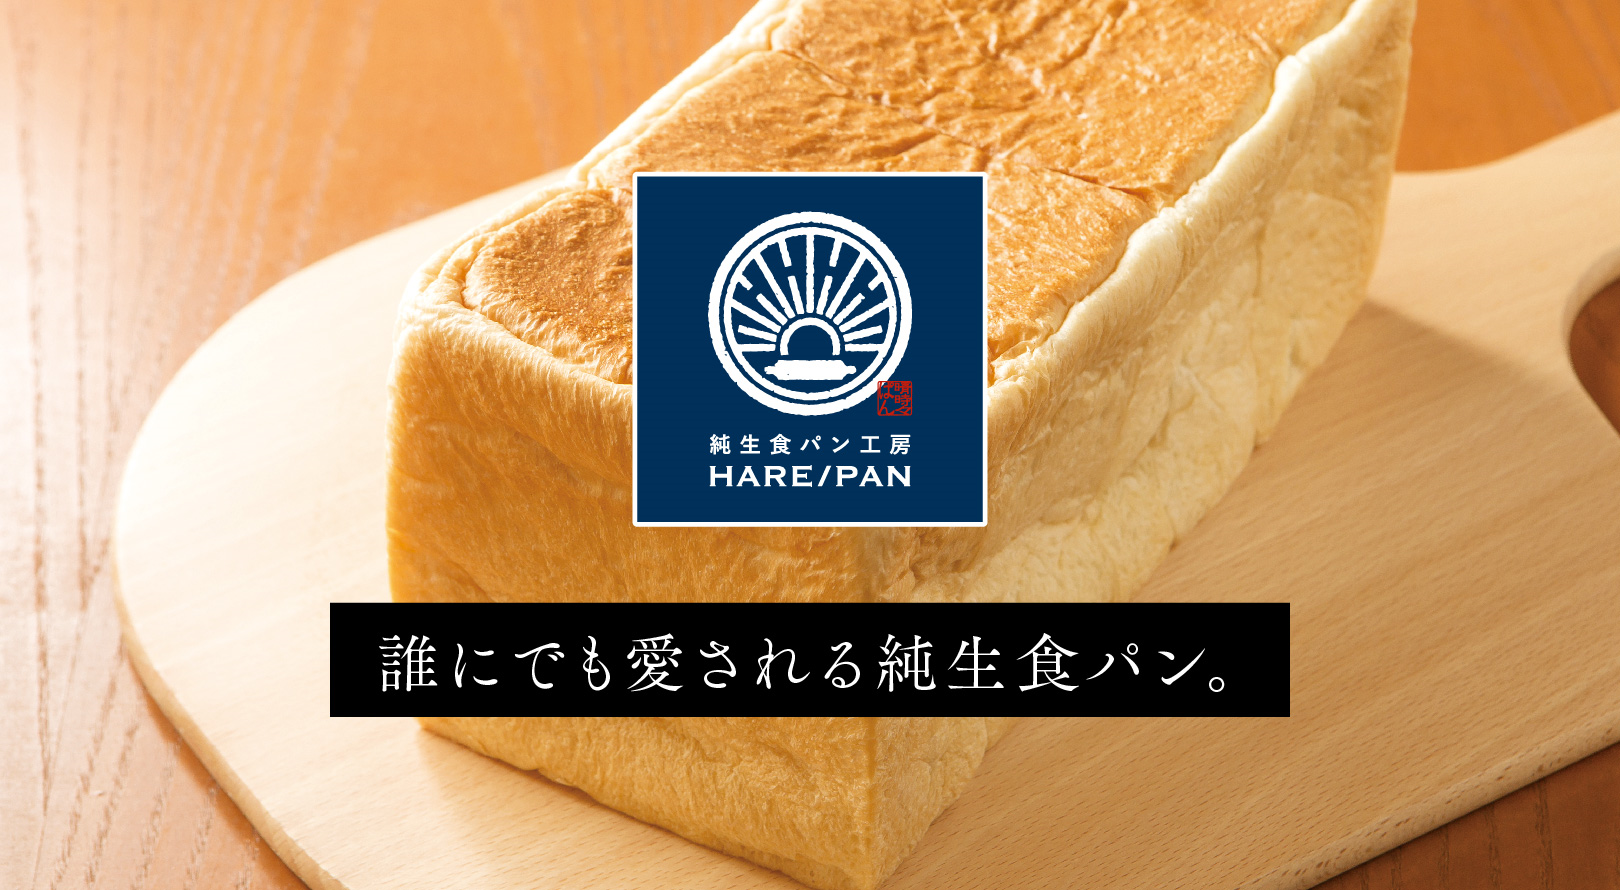 純生食パン工房 HARE/PAN | 株式会社源之丞